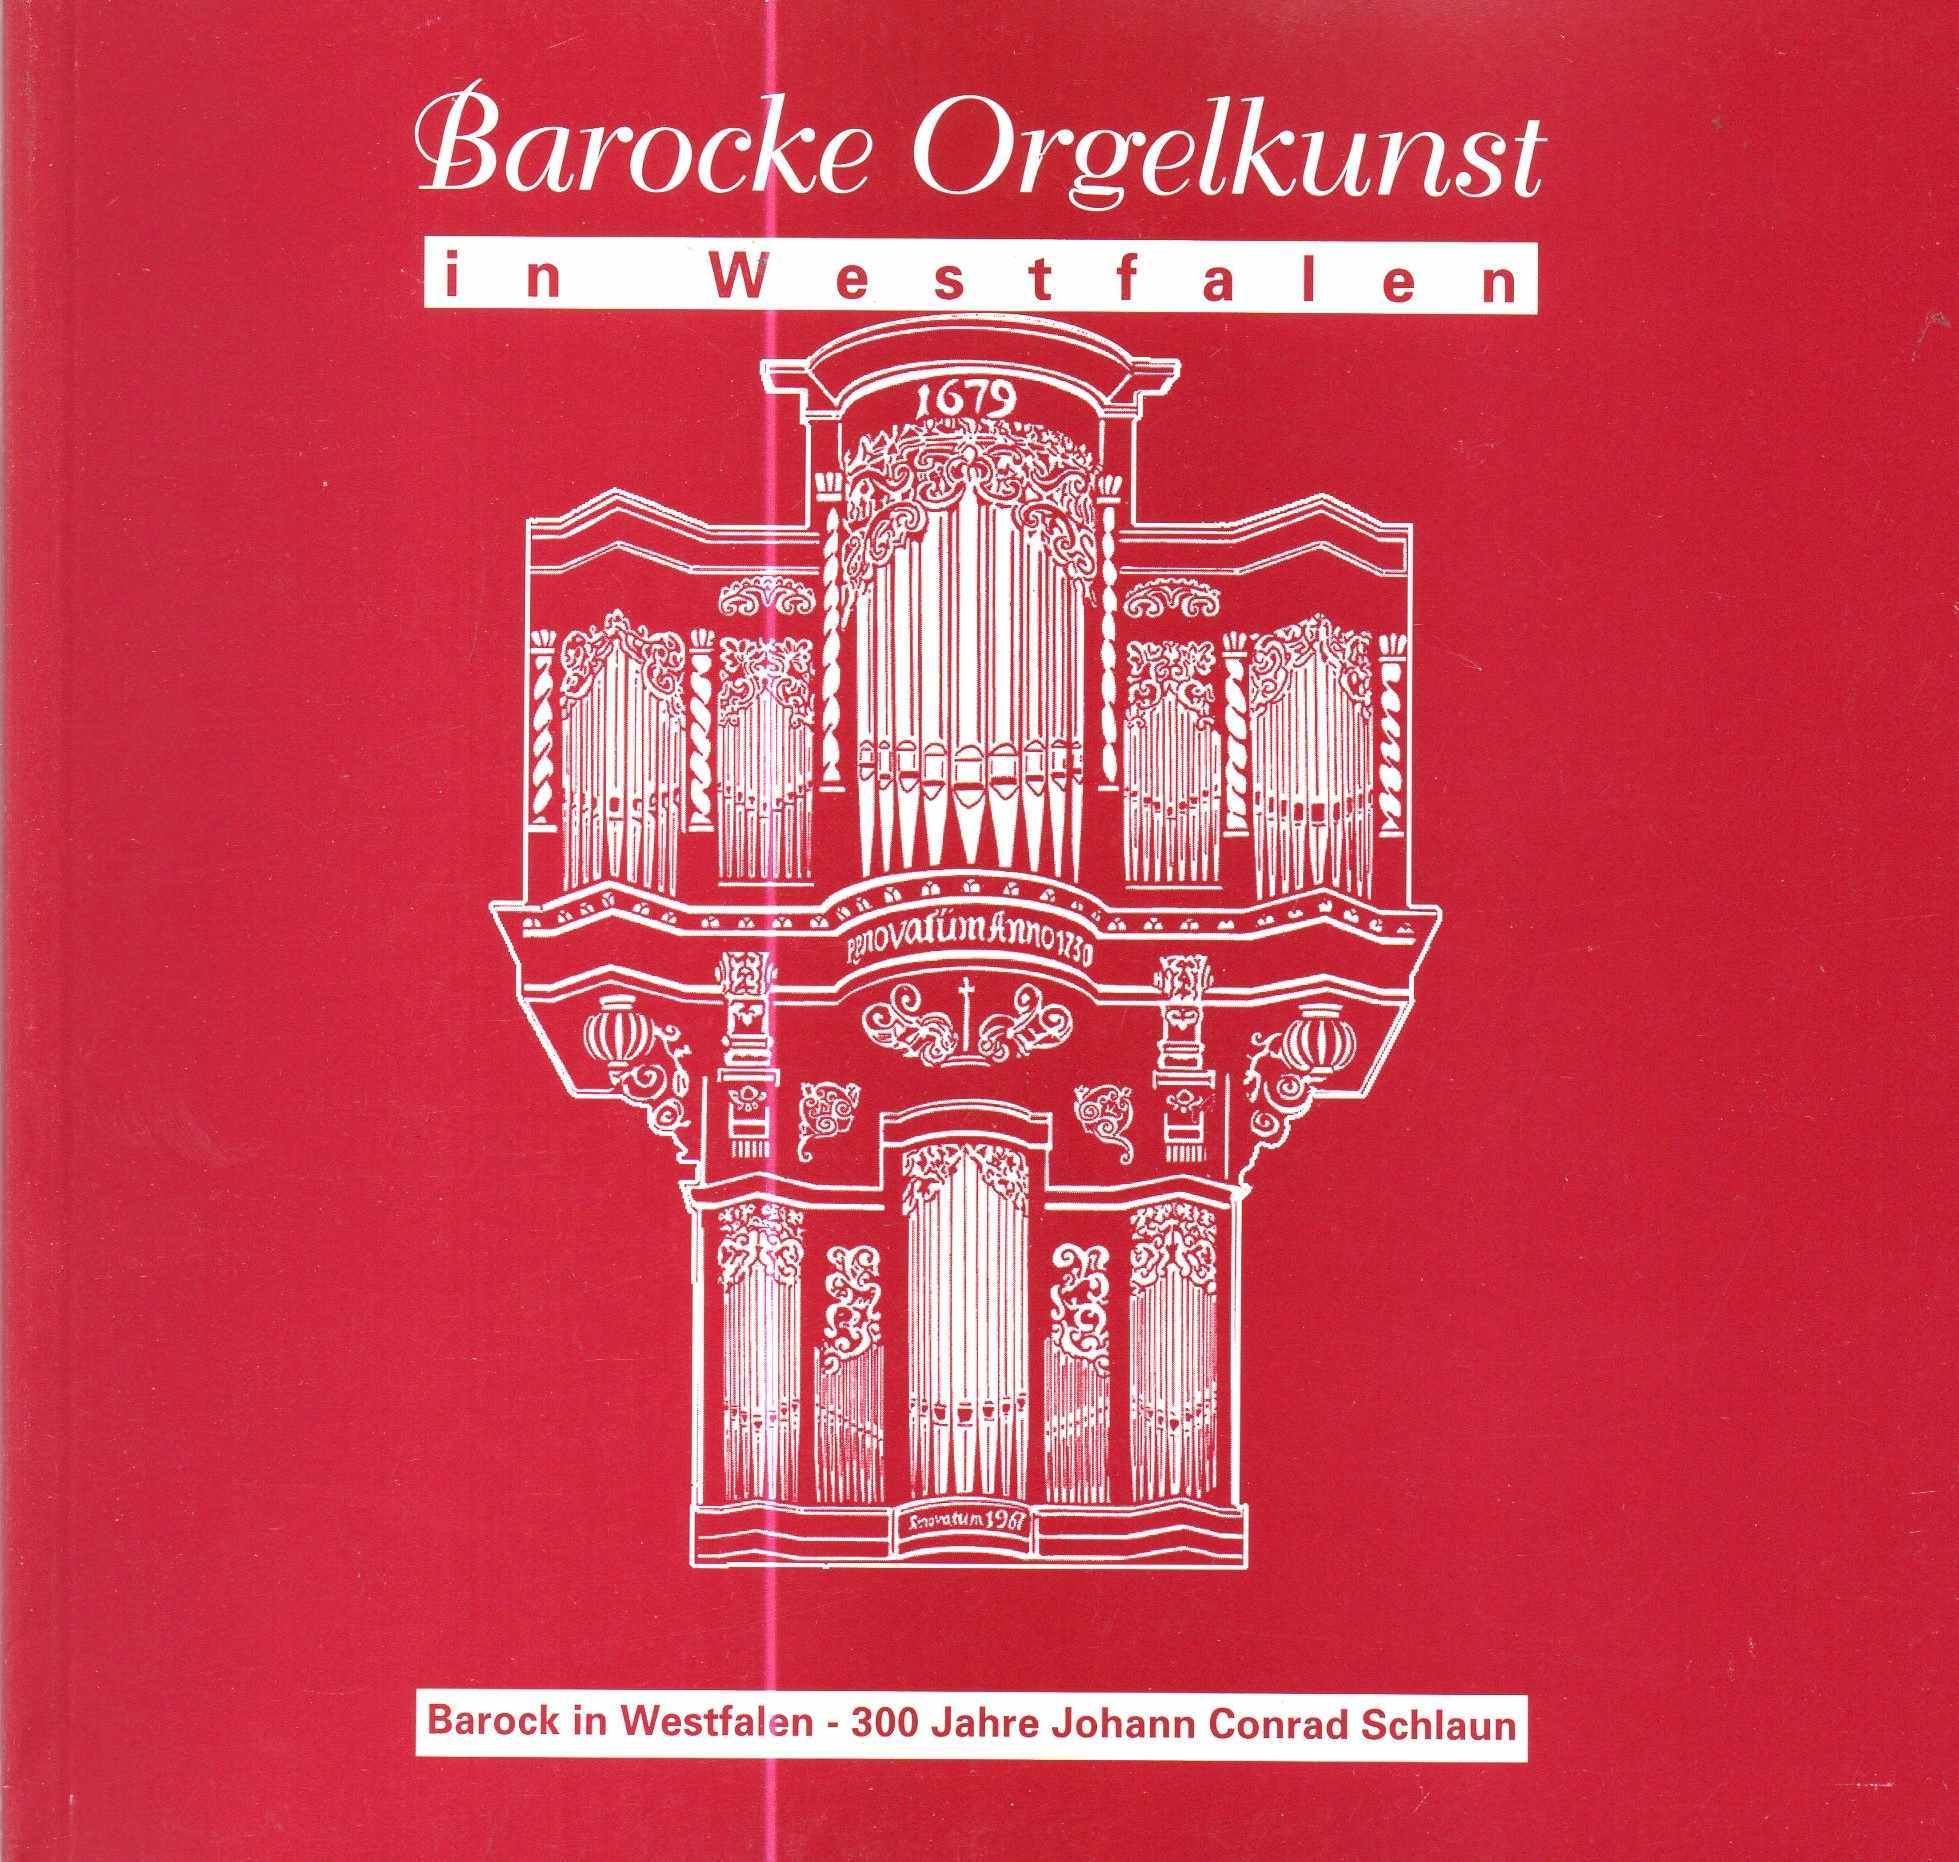 Barocke Orgelkunst in Westfalen eine Ausstellung innerhalb des Festivals 